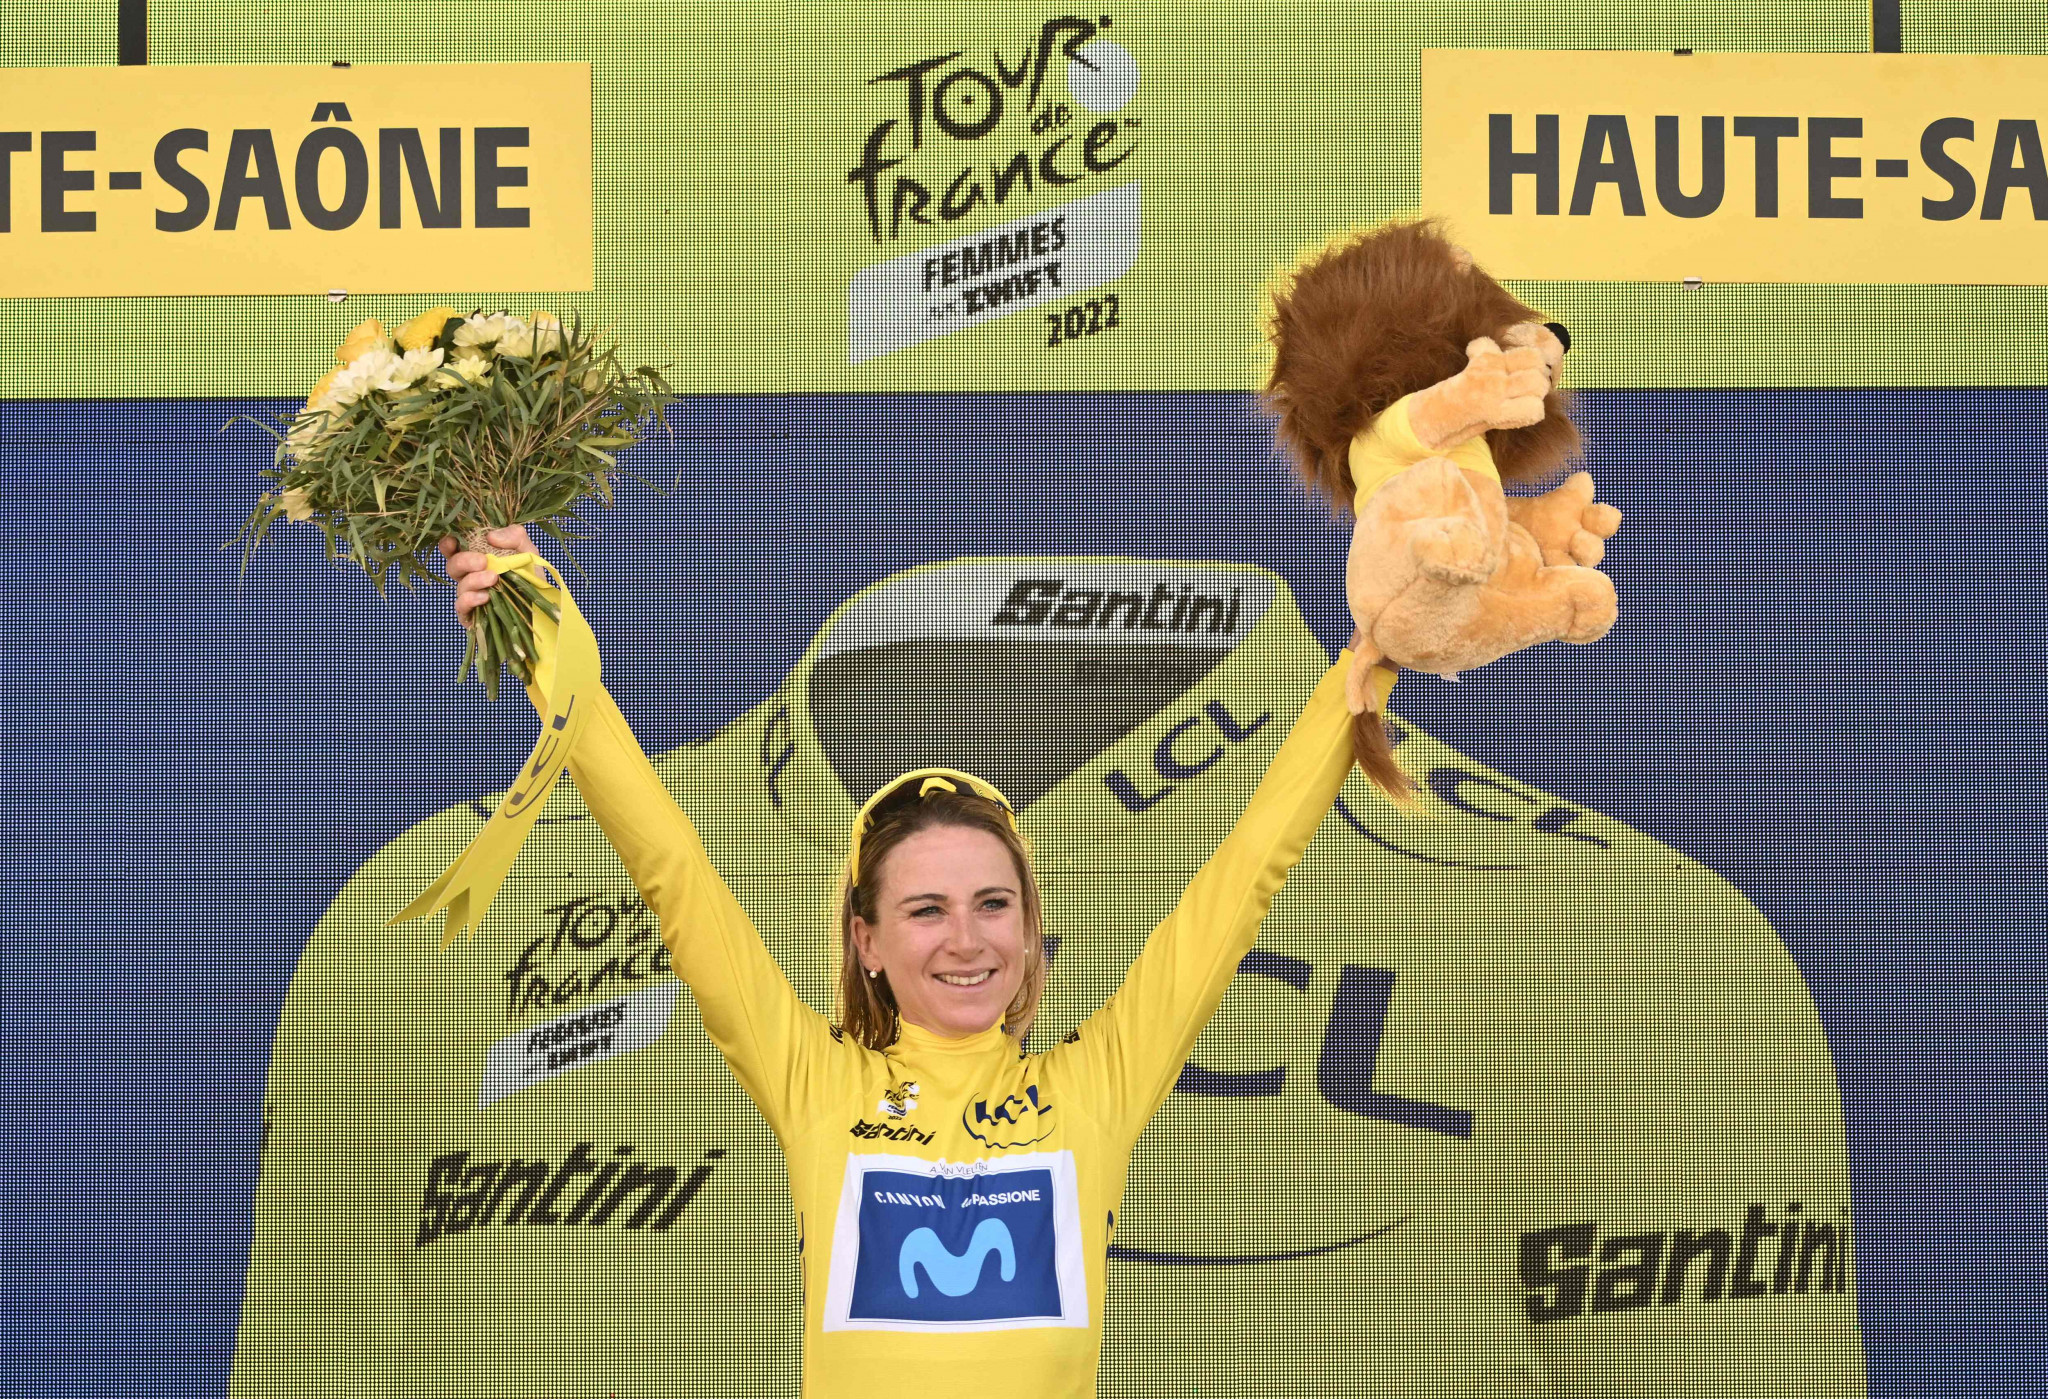 Van Vleuten delivers decisive attack to win Tour de France Femmes